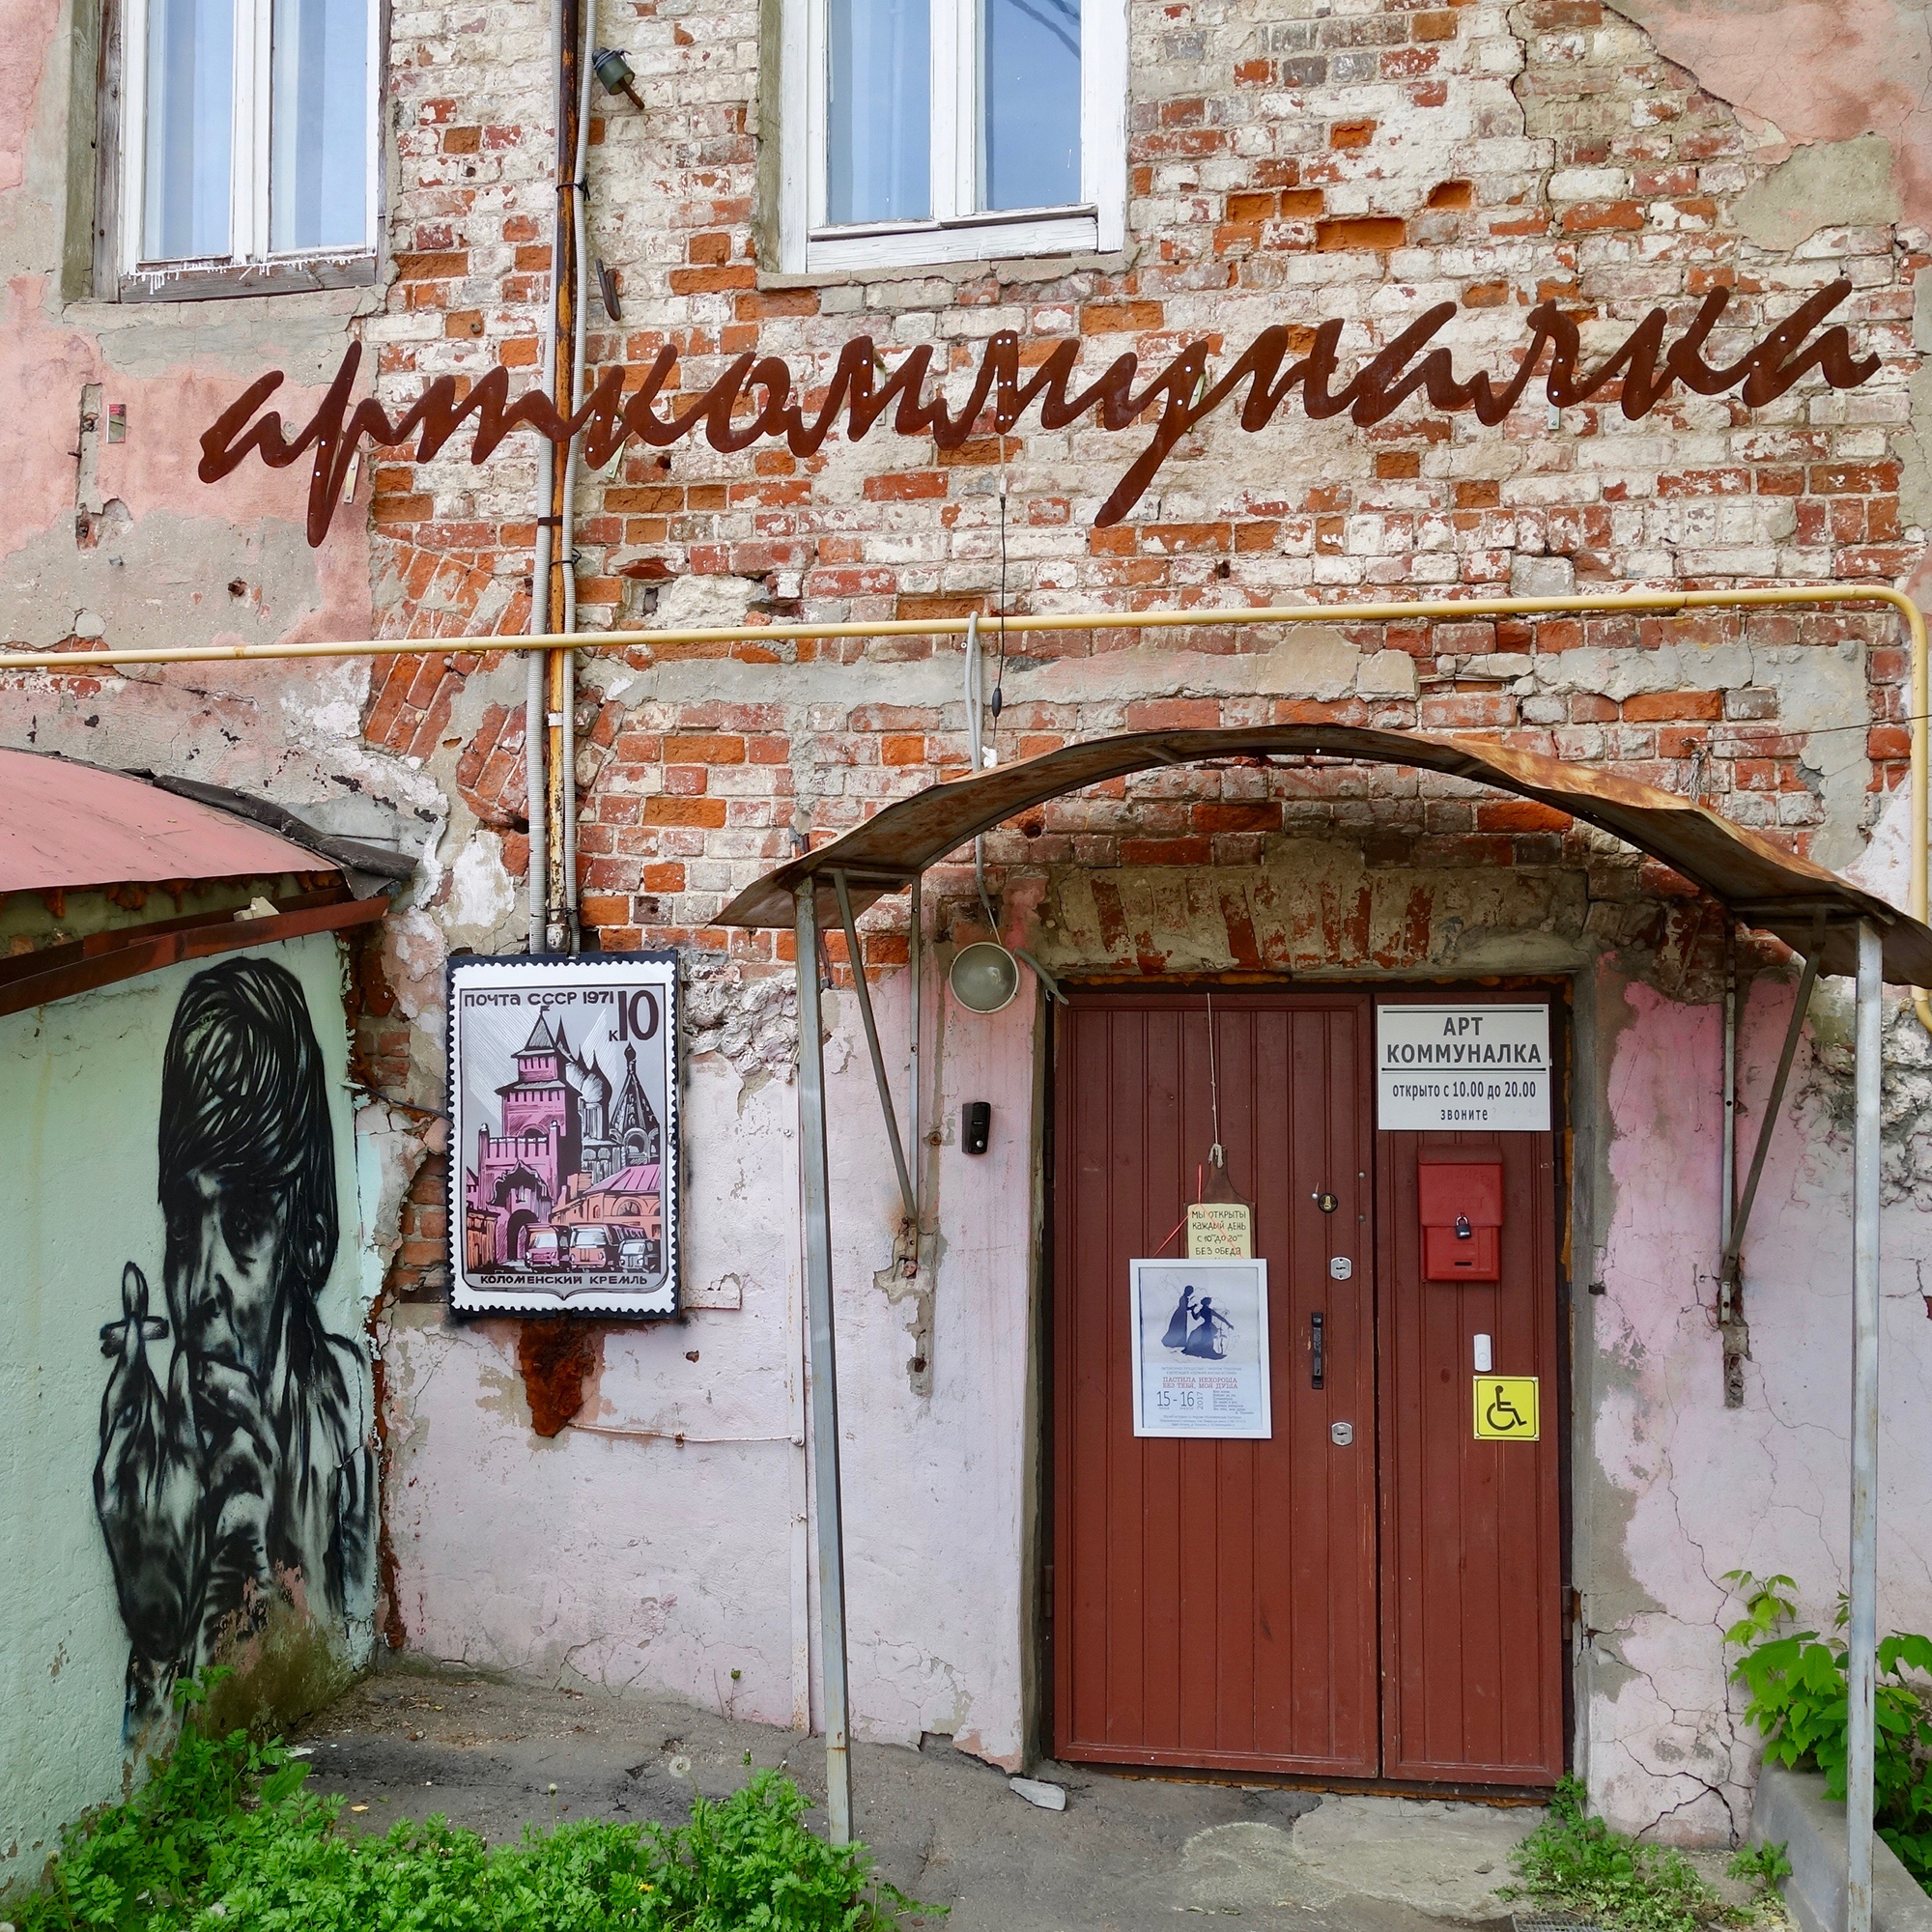 Портрет писателя Ерофеева украшает вход в музей «Арткоммуналка. Ерофеев и Другие»